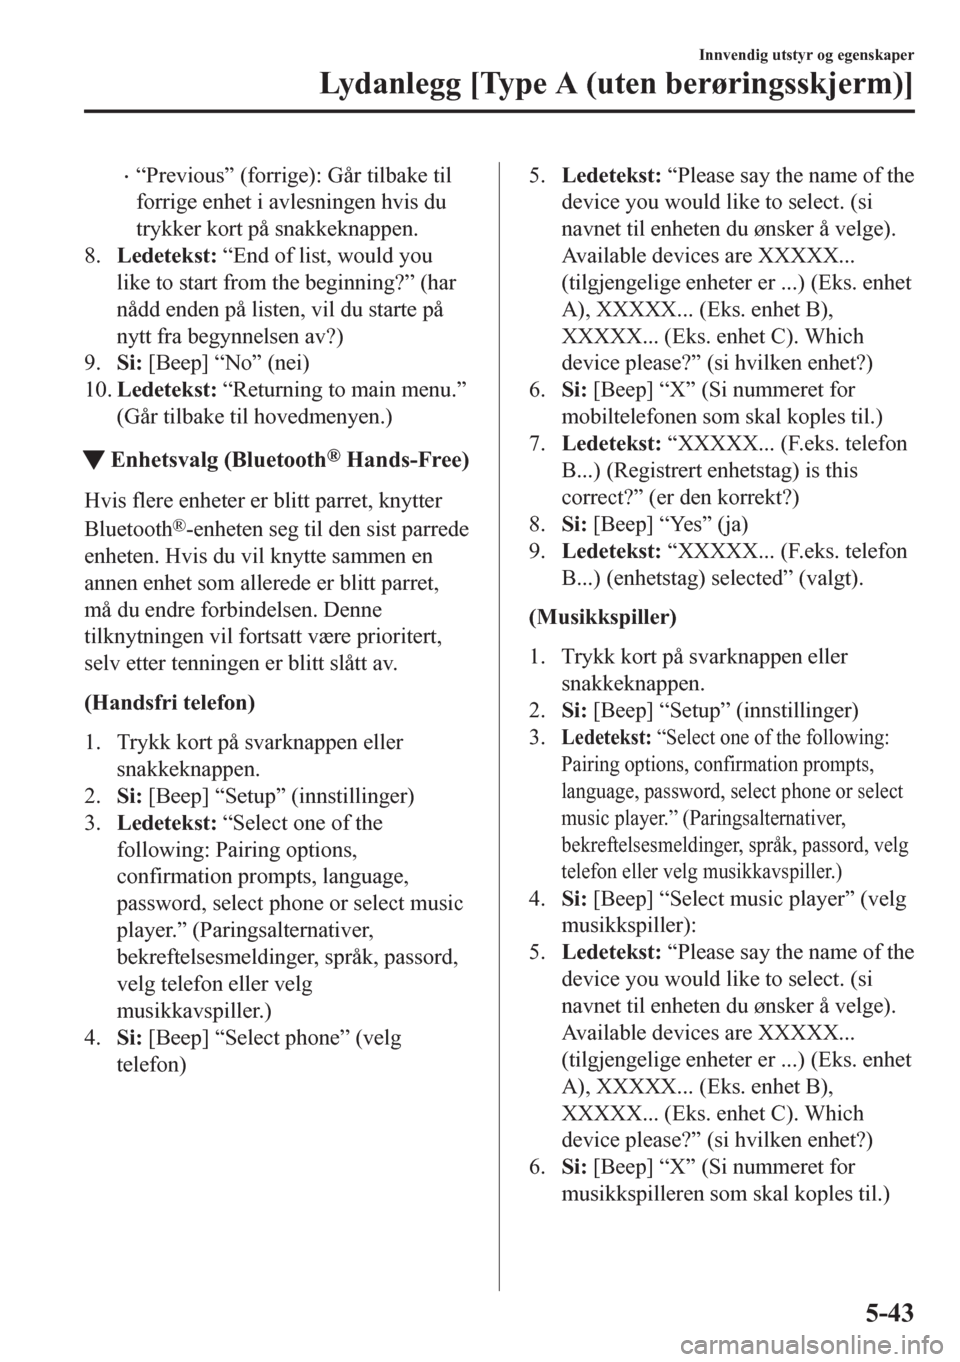 MAZDA MODEL CX-5 2018  Brukerhåndbok (in Norwegian) •“Previous” (forrige): Går tilbake til
forrige enhet i avlesningen hvis du
trykker kort på snakkeknappen.
8.Ledetekst: “End of list, would you
like to start from the beginning?” (har
nådd